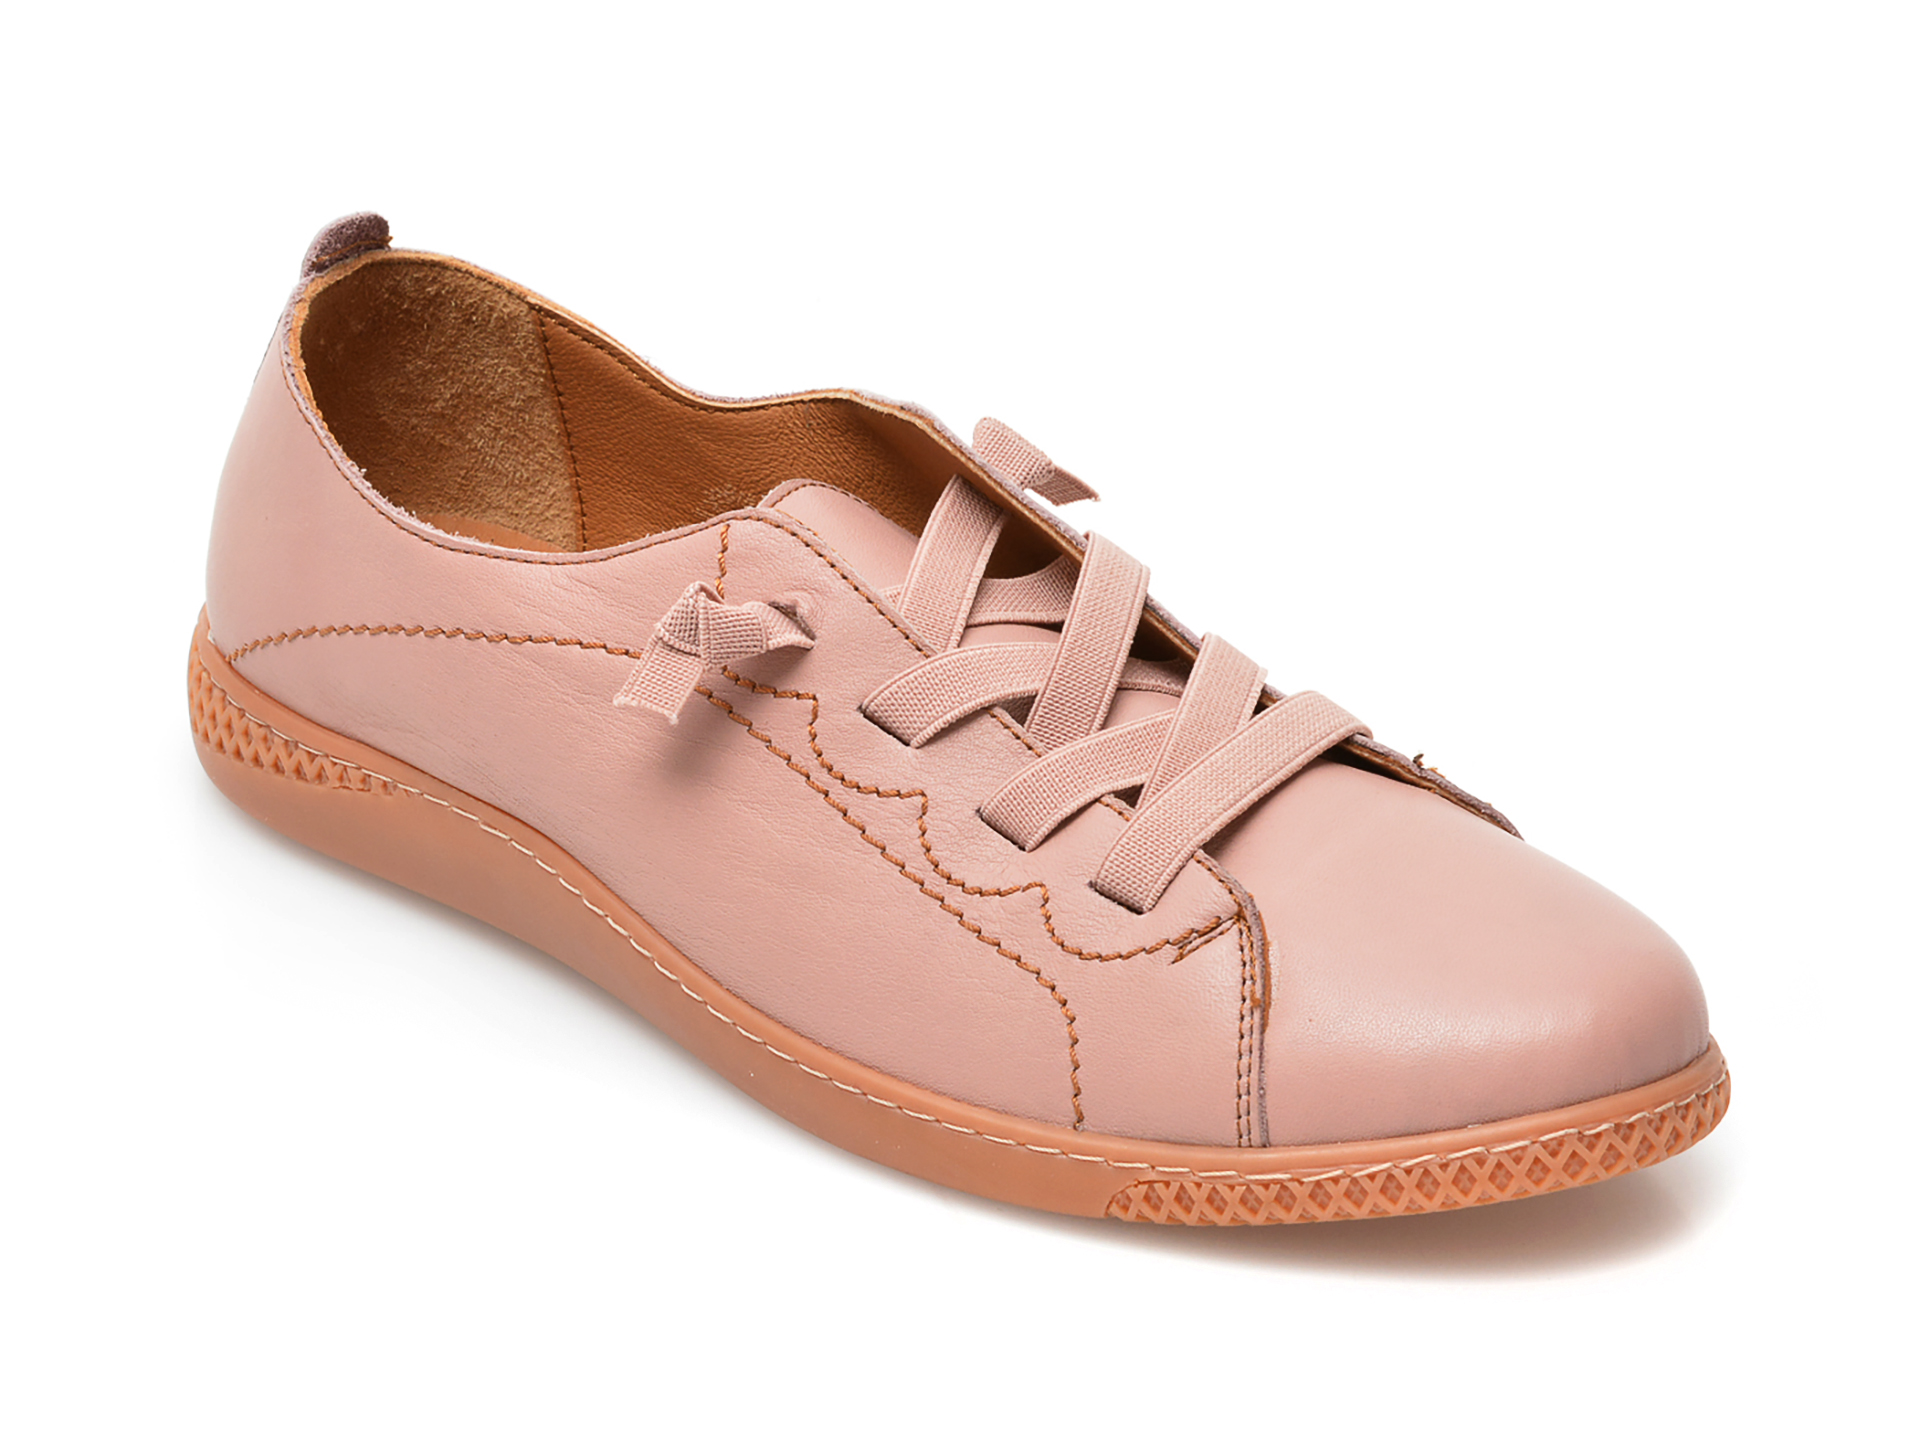 Pantofi FLAVIA PASSINI roz, 2090, din piele naturala Flavia Passini